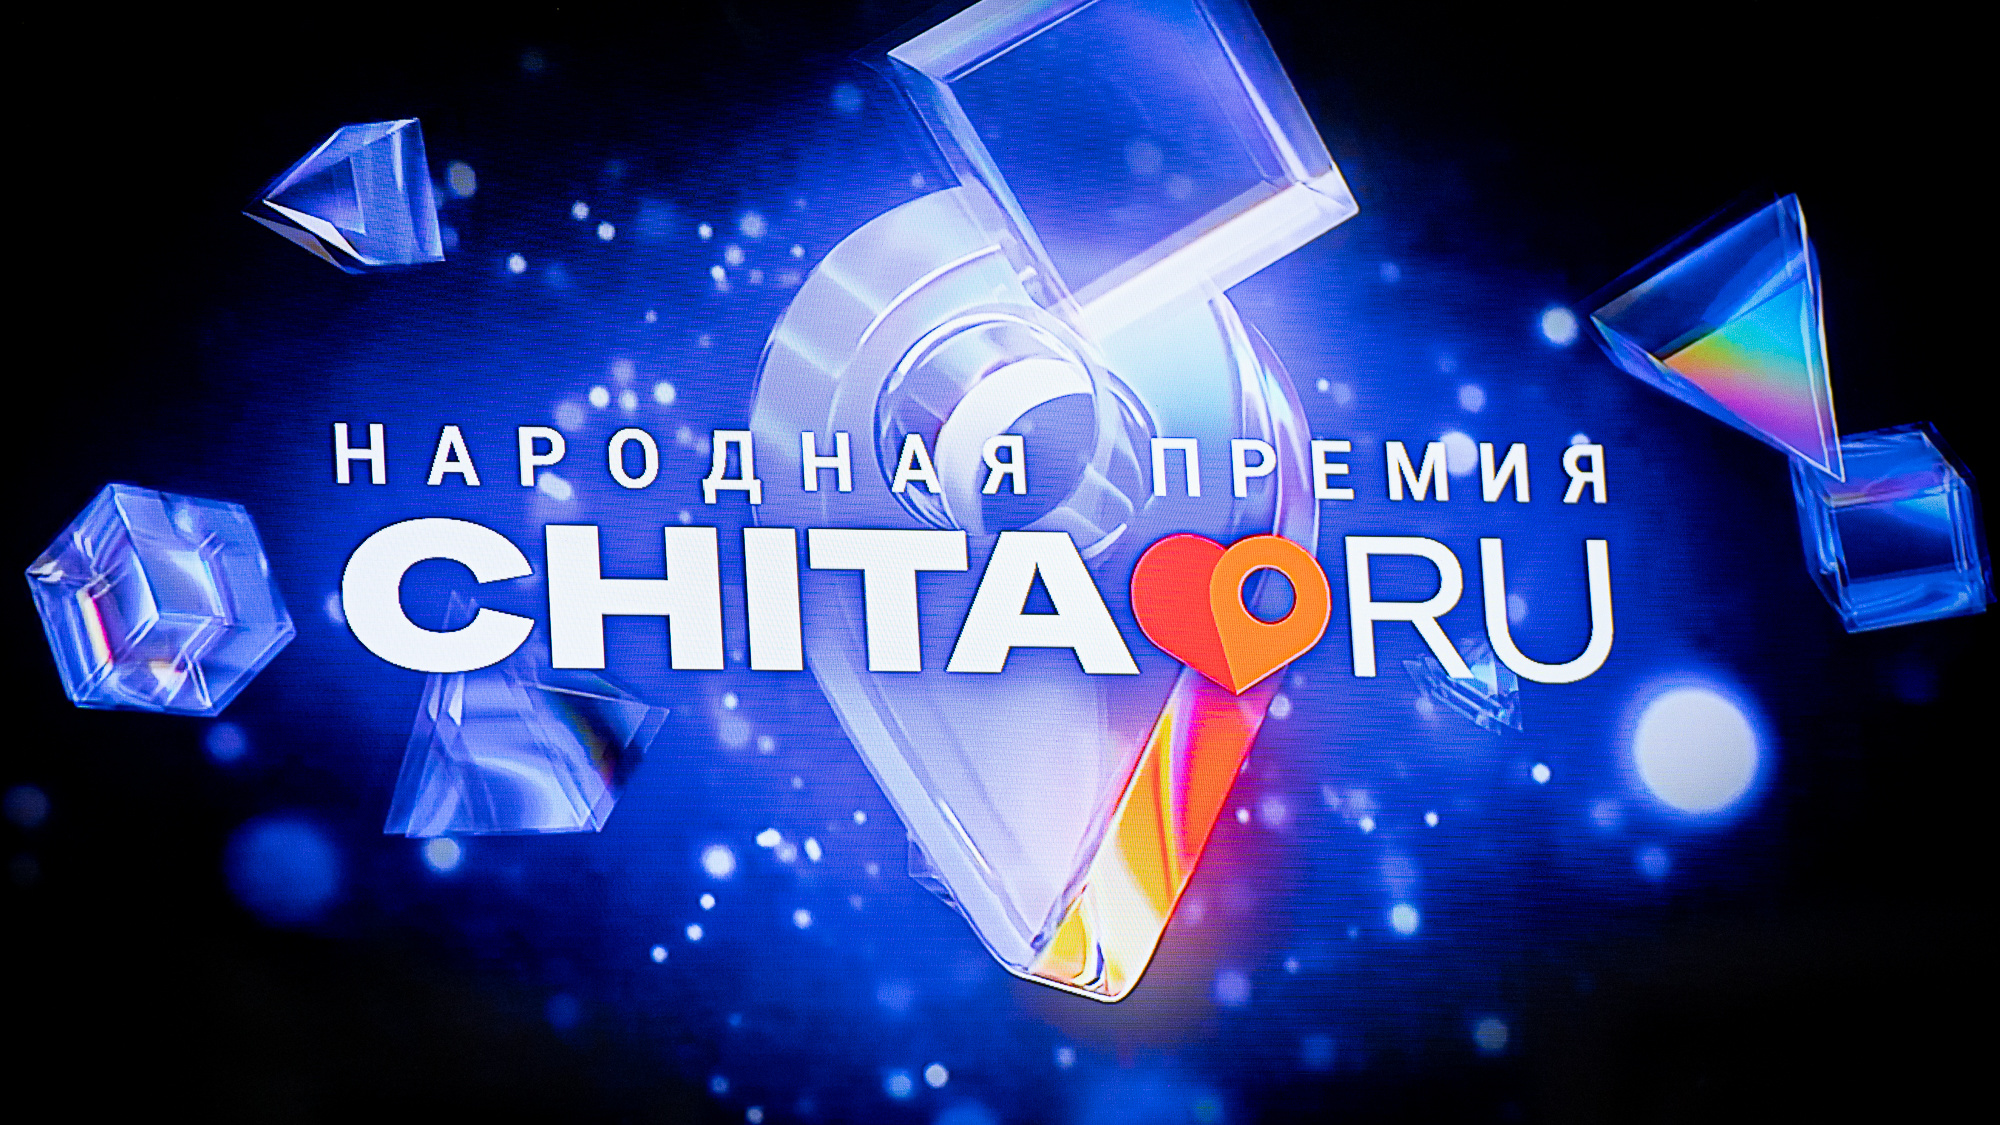 Малахов, Сюткин и лучший бизнес Забайкалья на одной сцене: видеотрансляция «Народной премии CHITA.RU»